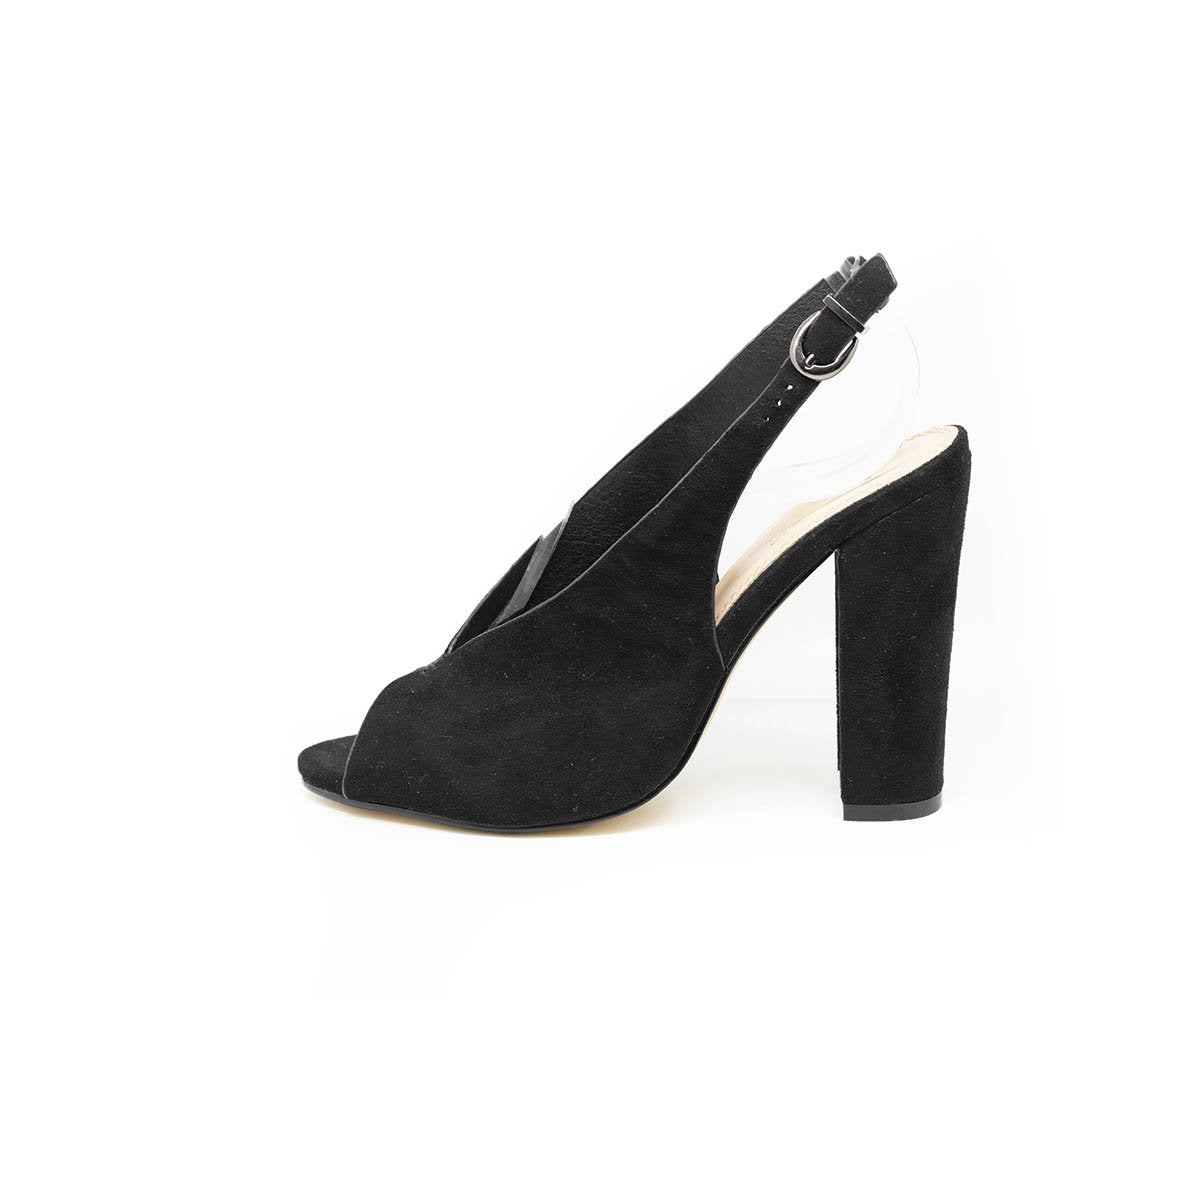 DKNY PUMP HEELS 🔥 CLEARANCE 🔥 | Pumps heels, Heels, Pumps